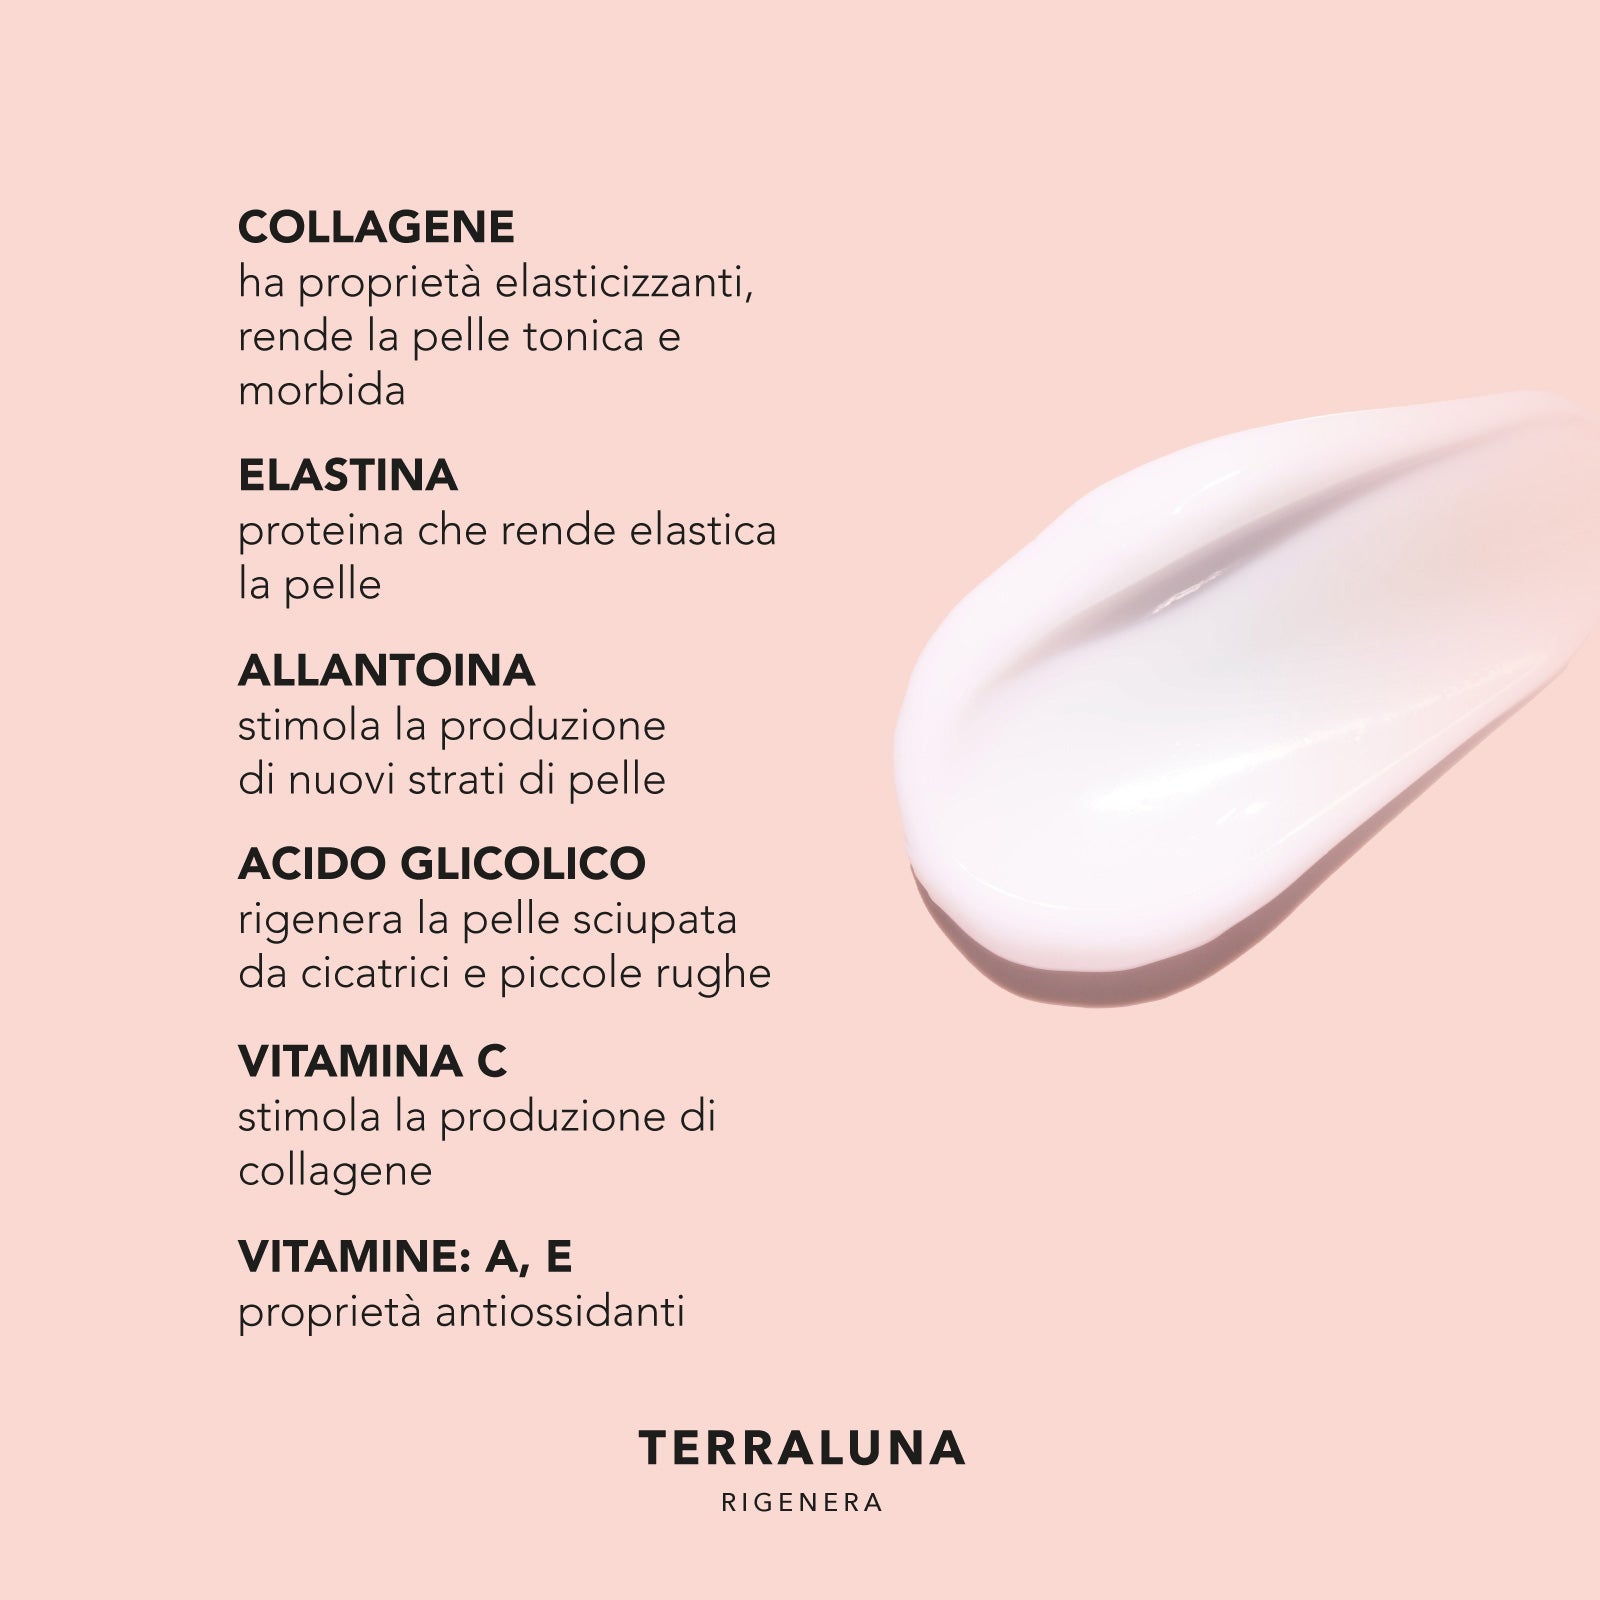 Crema  TERRALUNA con ingredienti attivi come collagene, elastina e vitamine per la rigenerazione della pelle